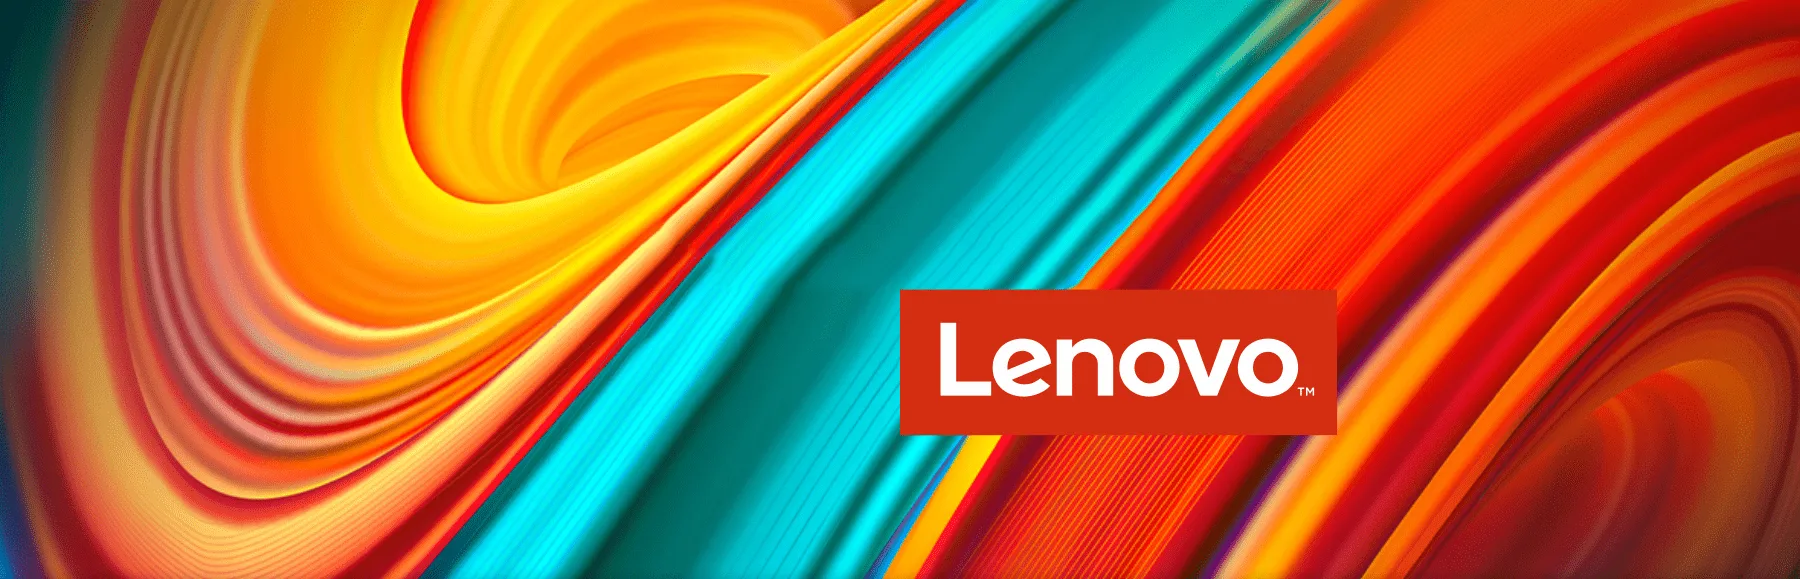 Productos Lenovo